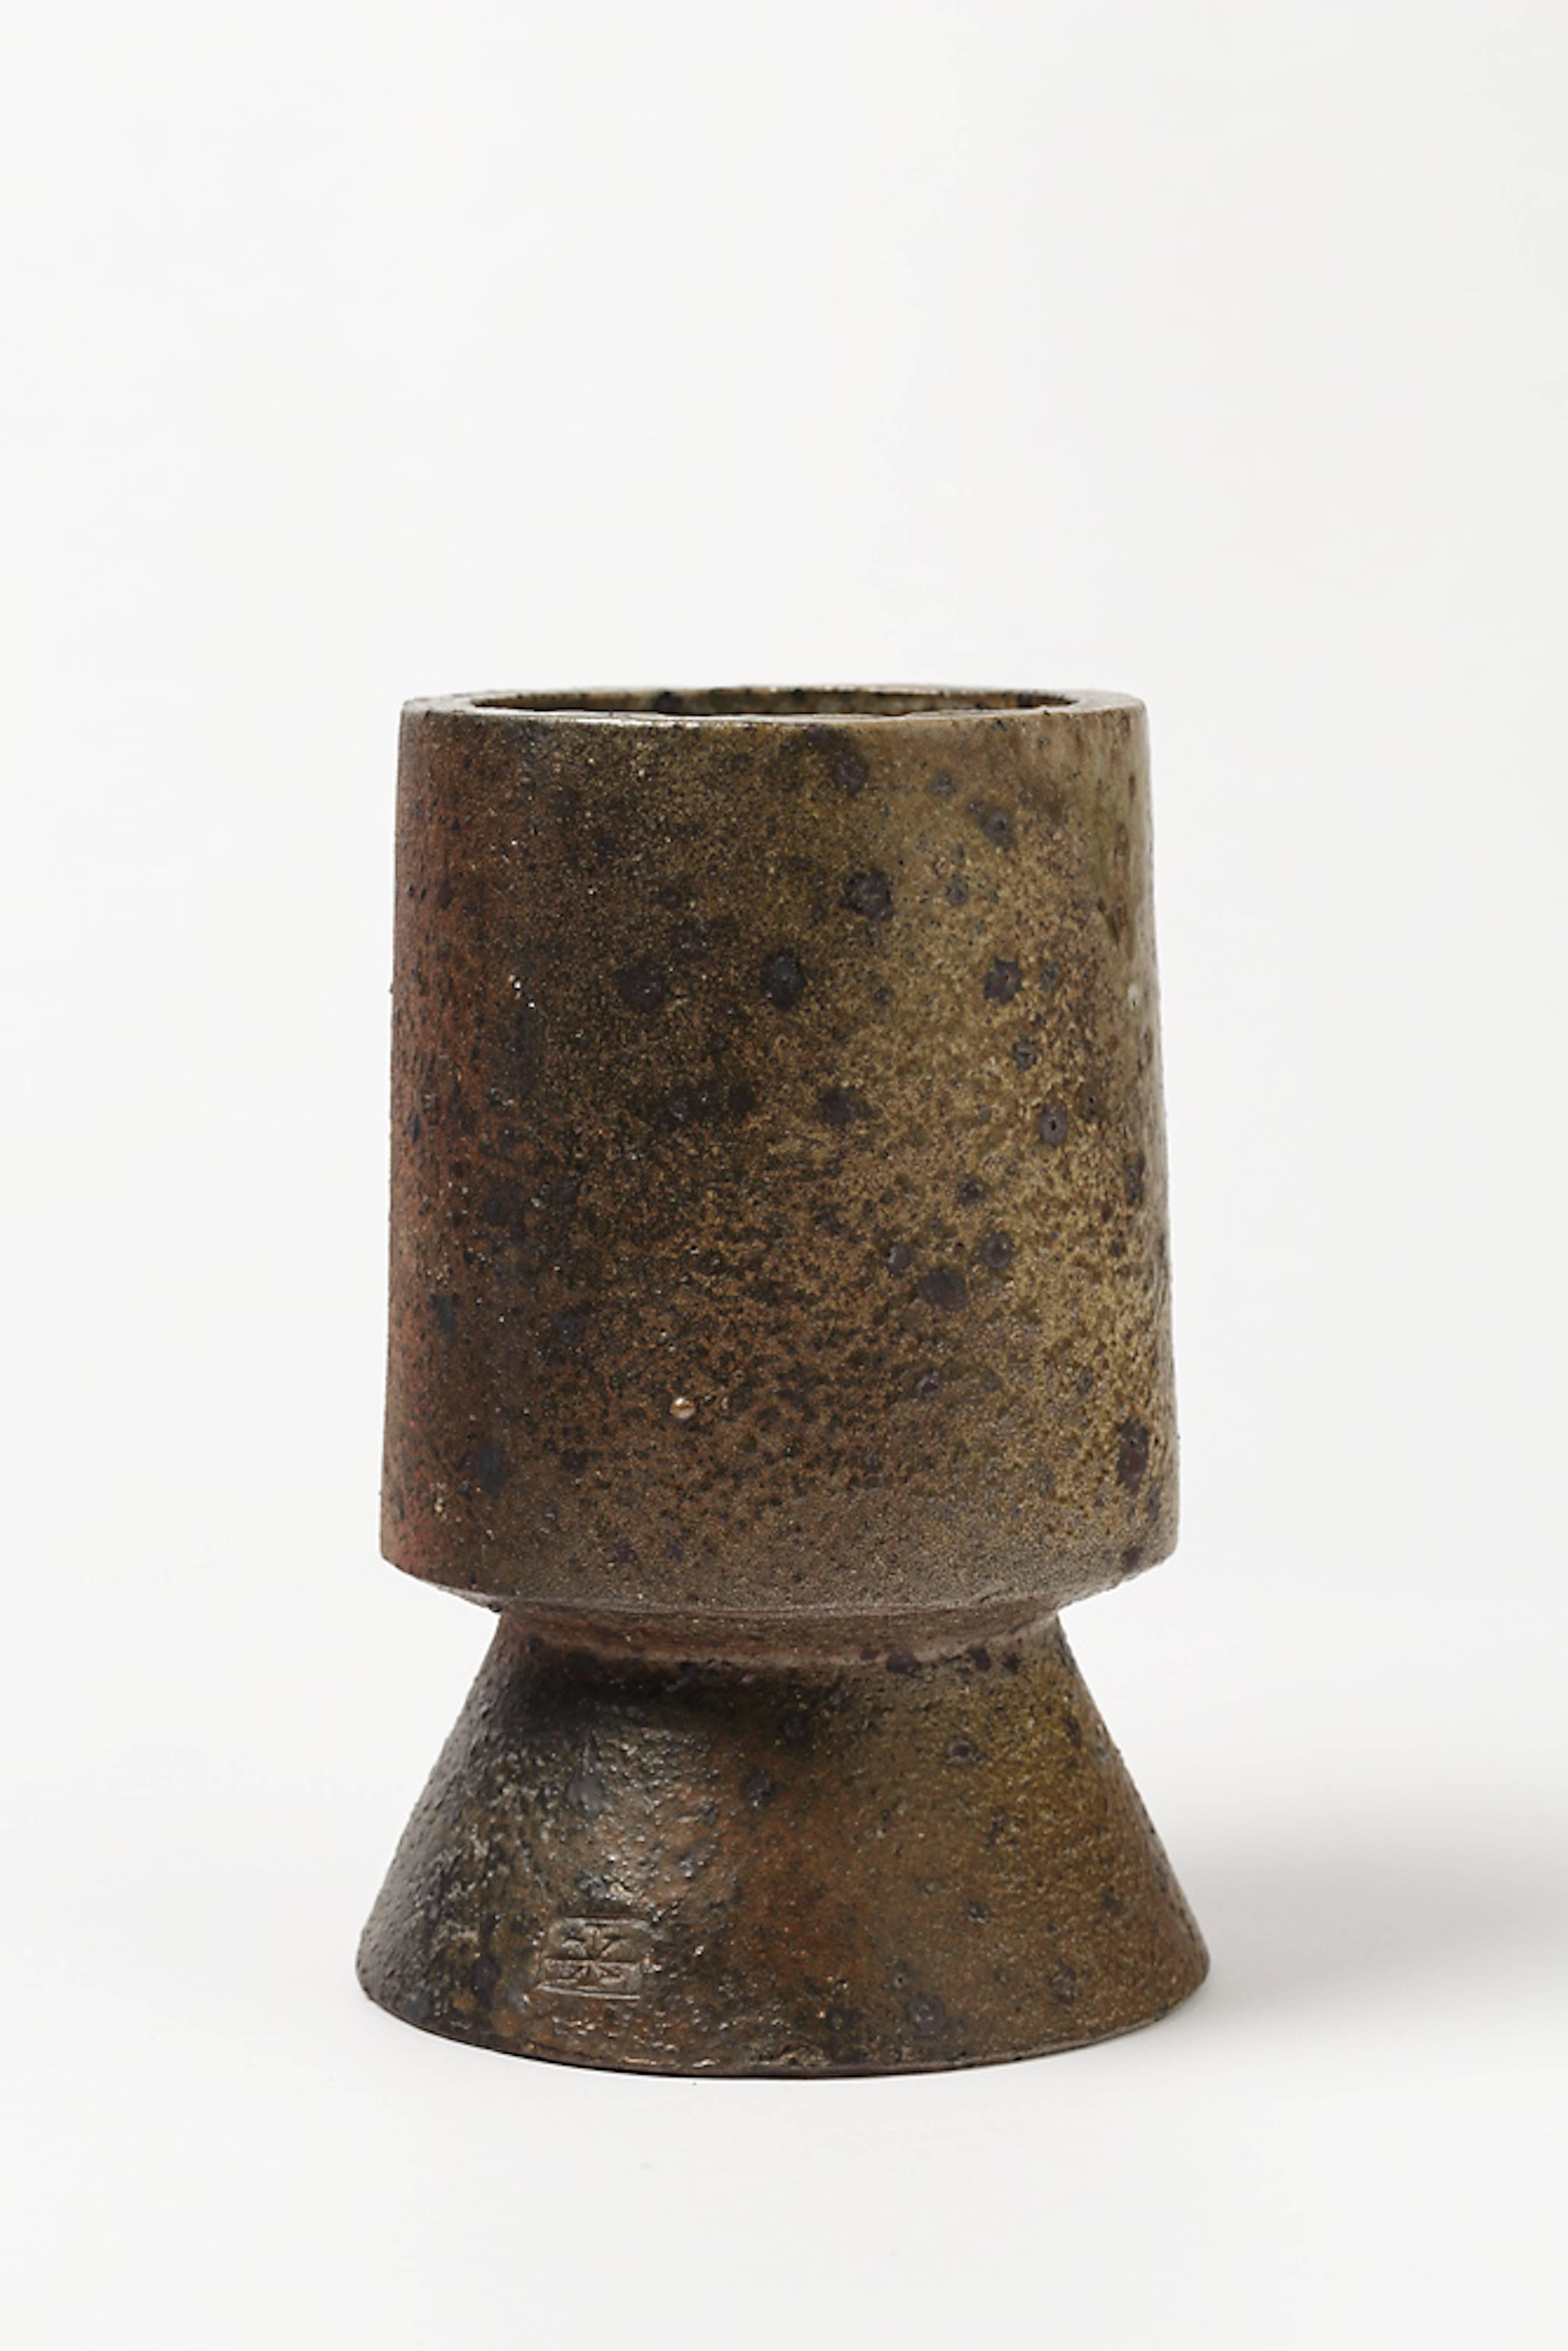 Beaux Arts Rare and Unique Stoneware Sculpture, Vase by Robert Deblander, circa 1970-1975